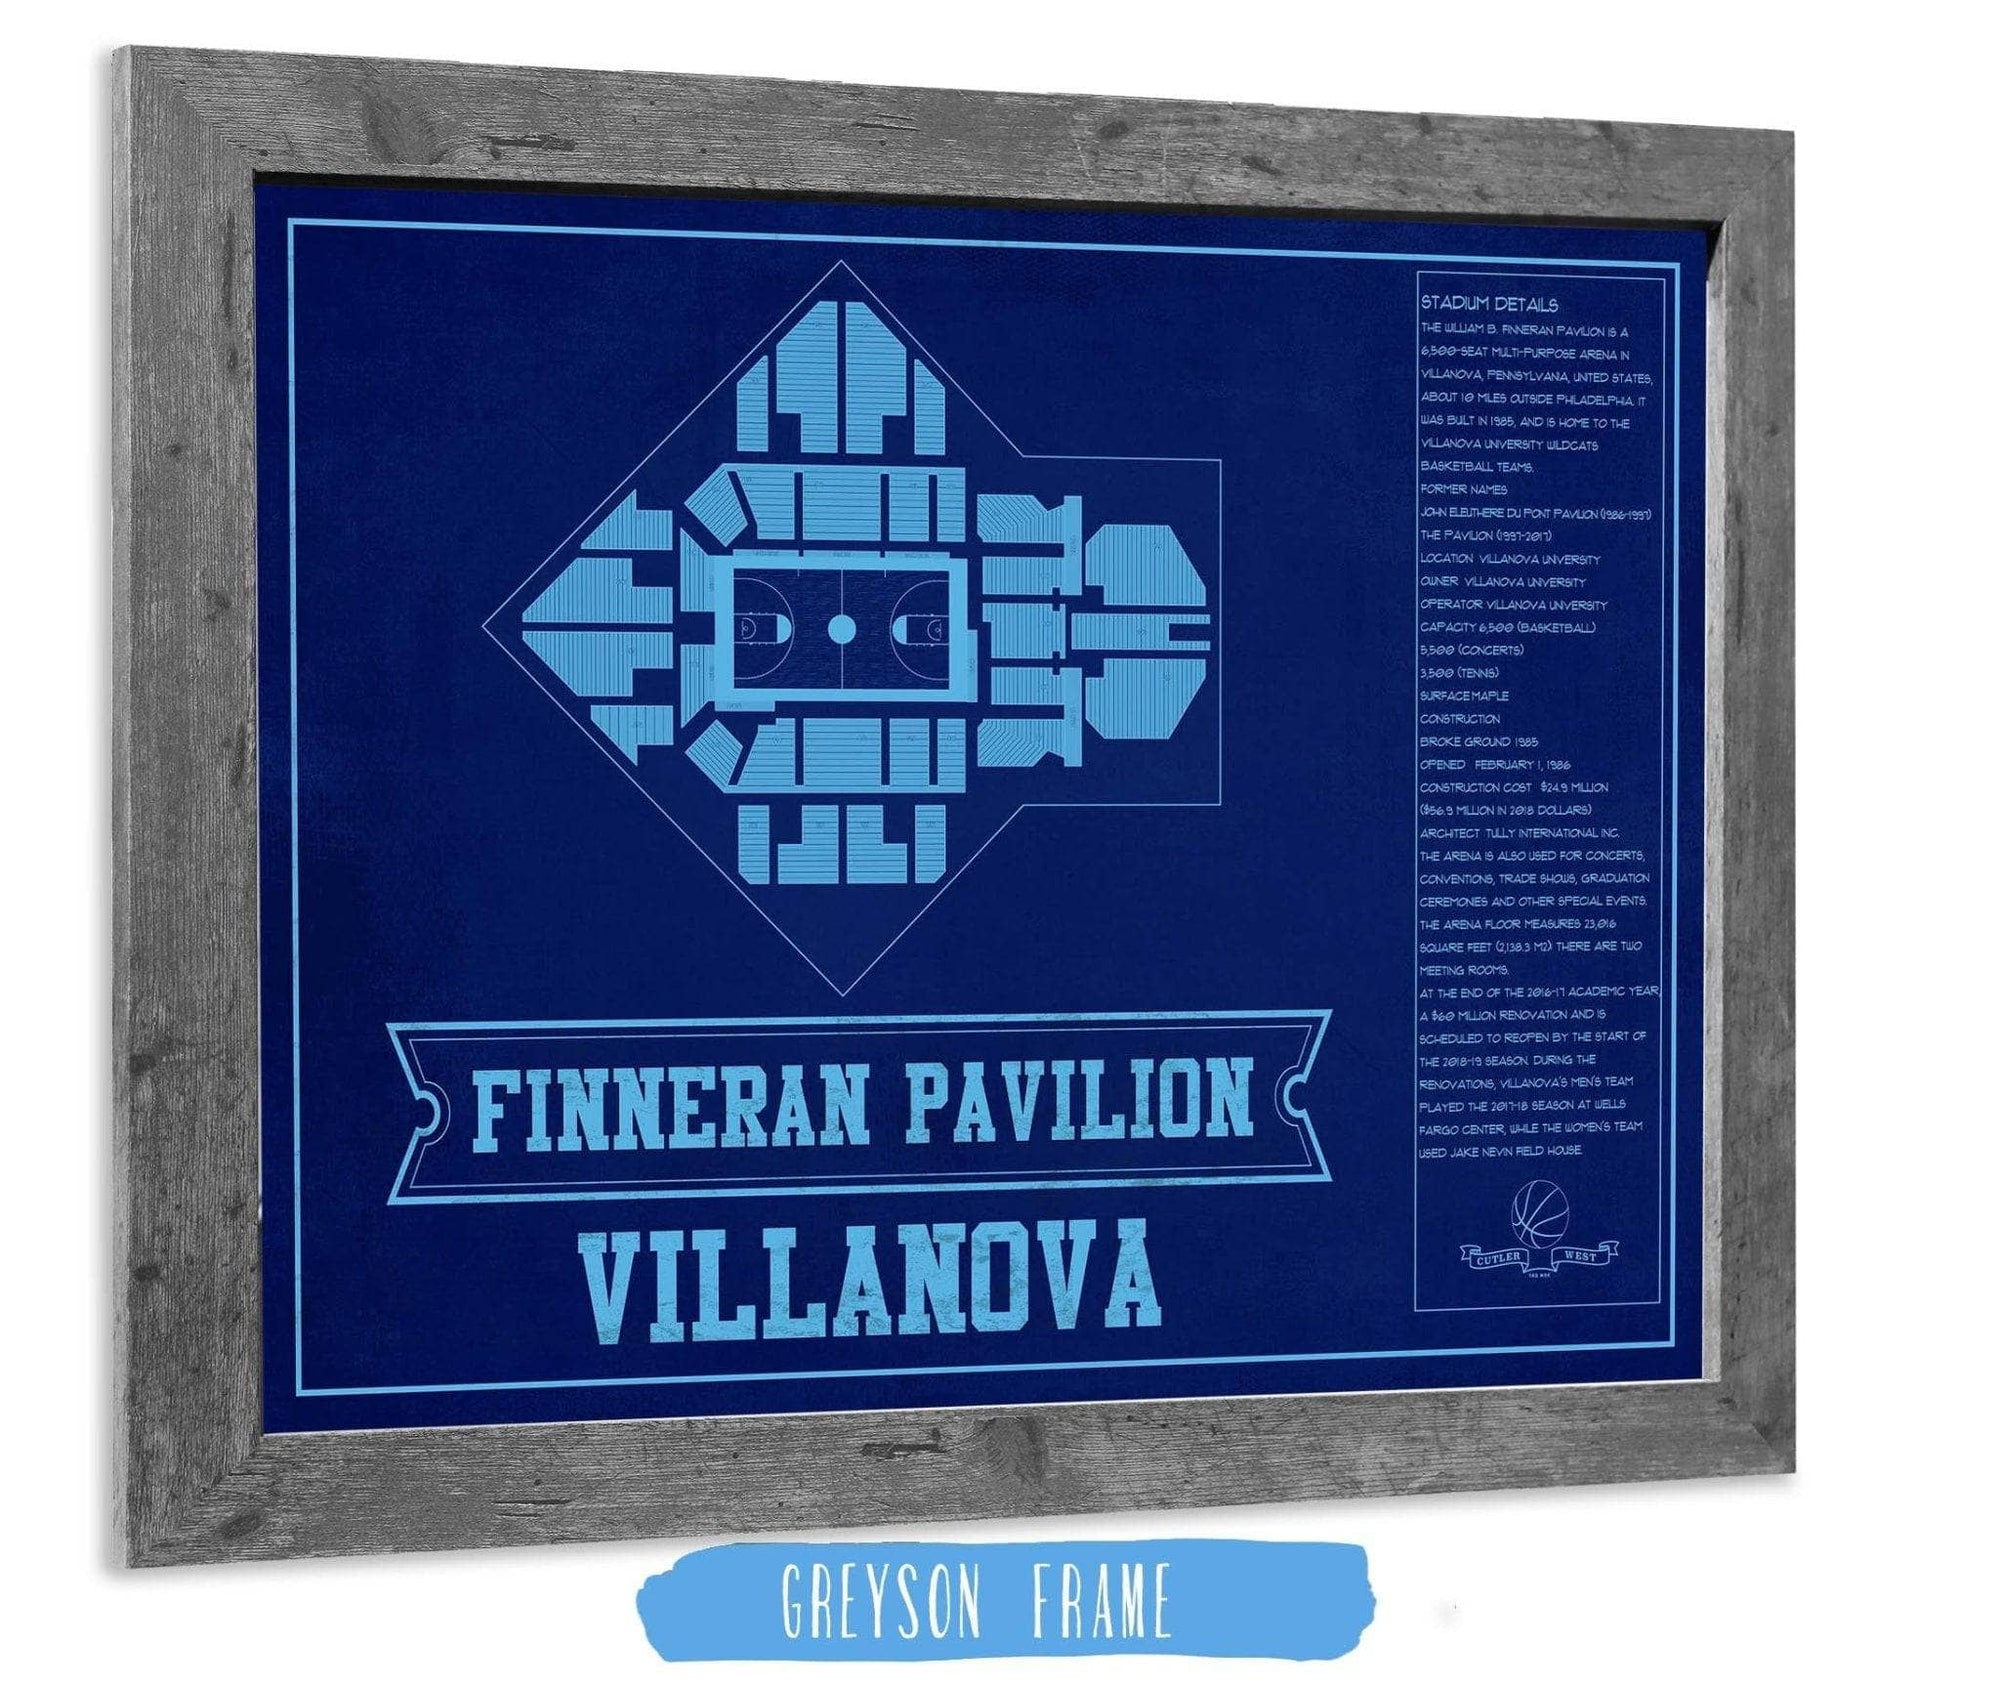 Cutler West Basketball Collection 14" x 11" / Greyson Frame Villanova Wildcats - Finneran Pavilion Seating Chart - College Basketball Blueprint Team Color Art 675916227-TEAM84951